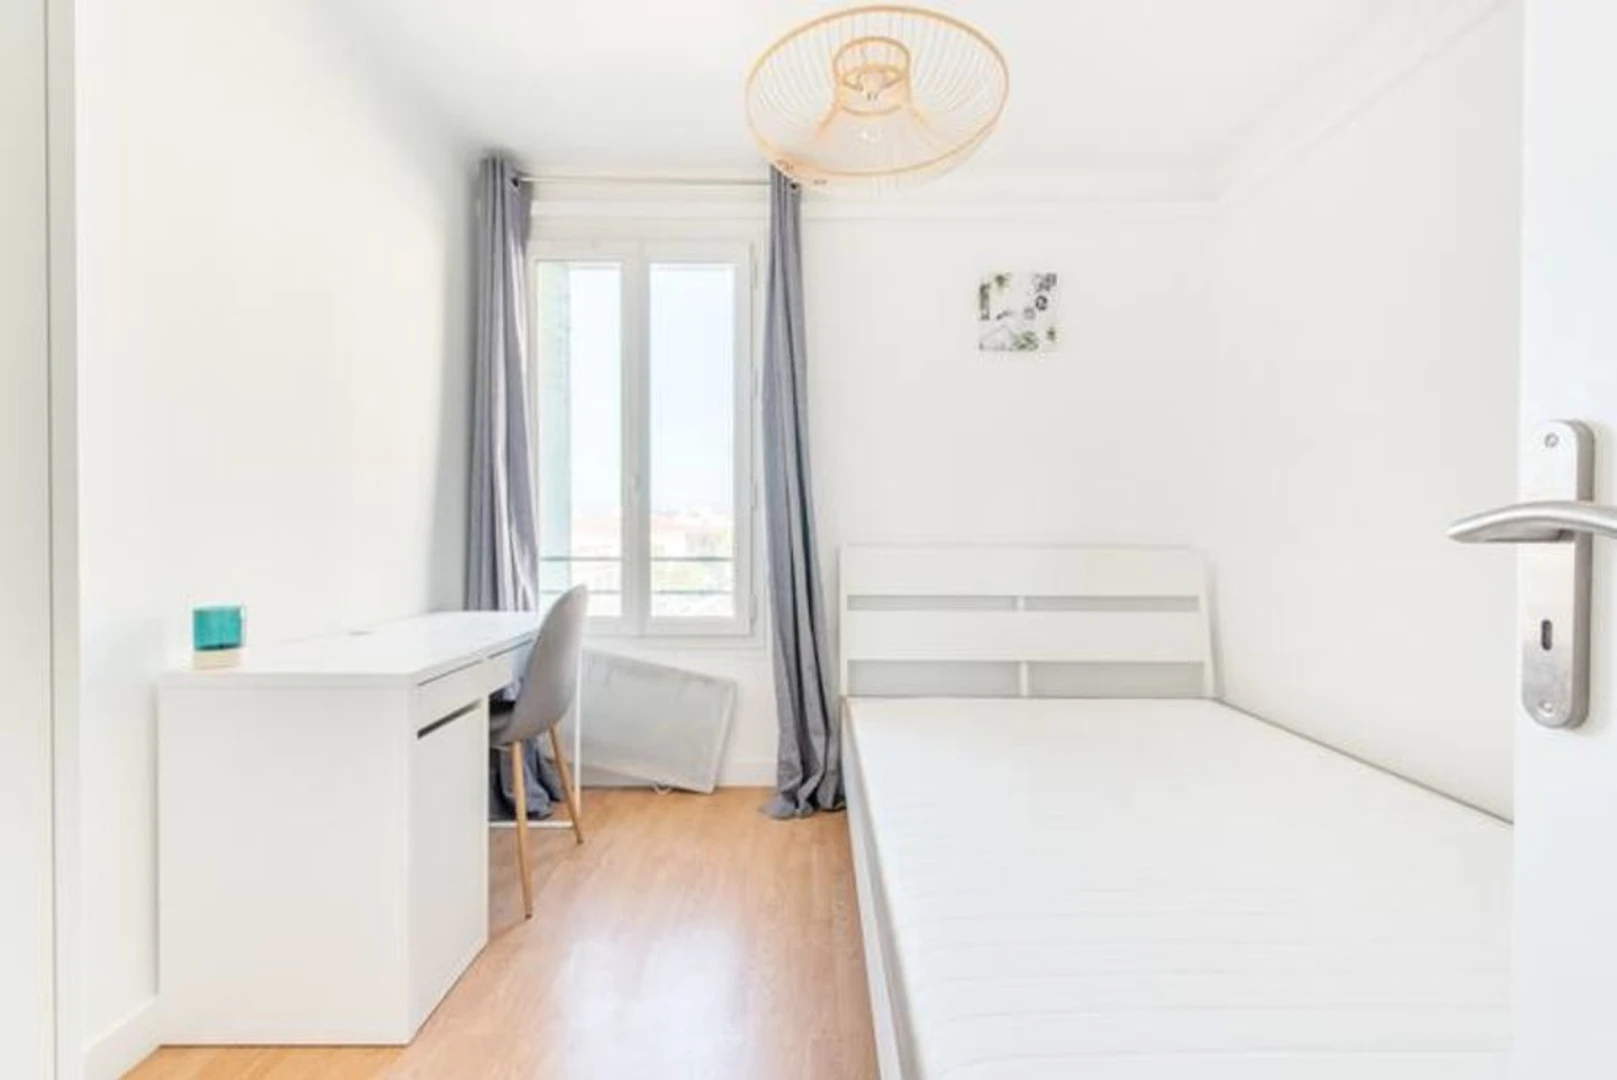 Habitación privada barata en Marsella